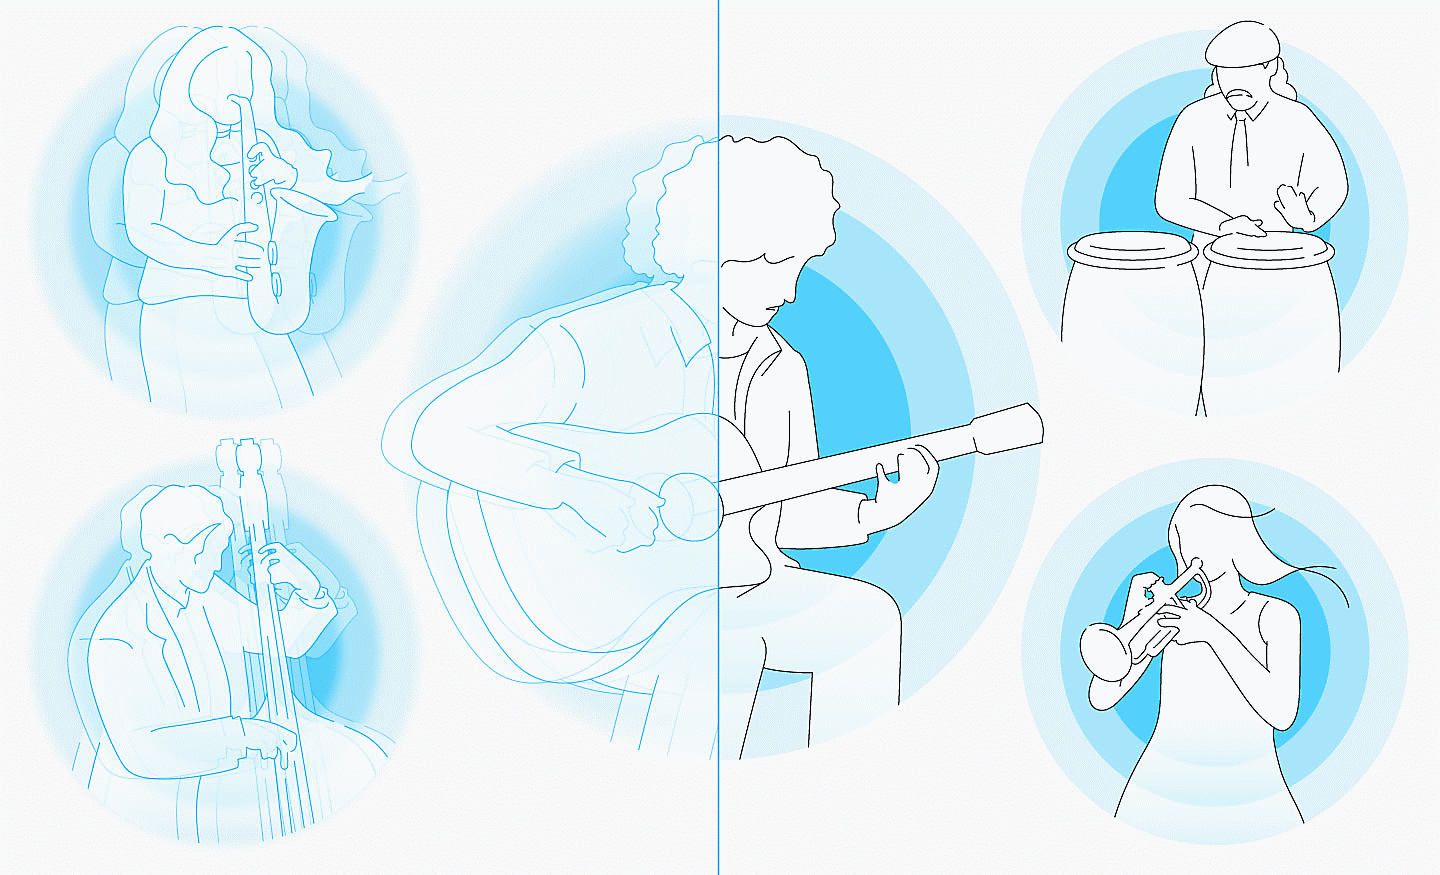 Obrázok ľudí hrajúcich na hudobné nástroje s modrými kruhmi za nimi, ľavá strana je rozmazaná a pravá strana je čistá